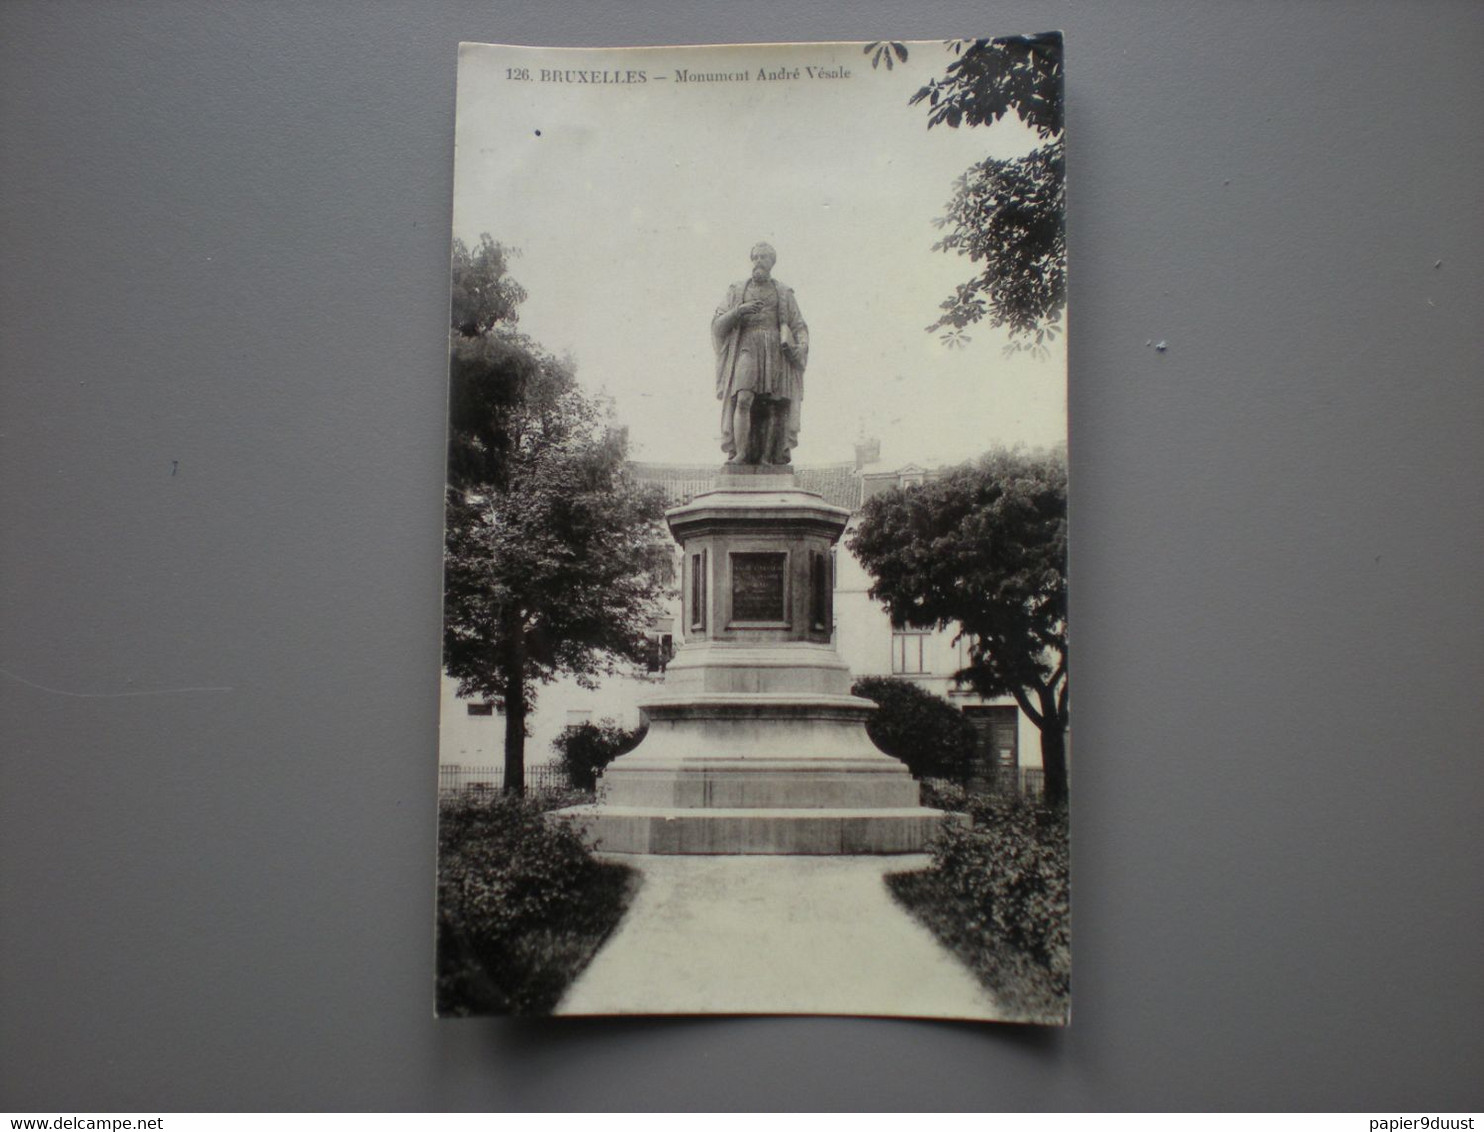 BRUXELLES - MONUMENT ANDRE VESALE - ED. GRAND BAZAR ANSPACH N° 126 - CARTE PHOTO - Non Classificati